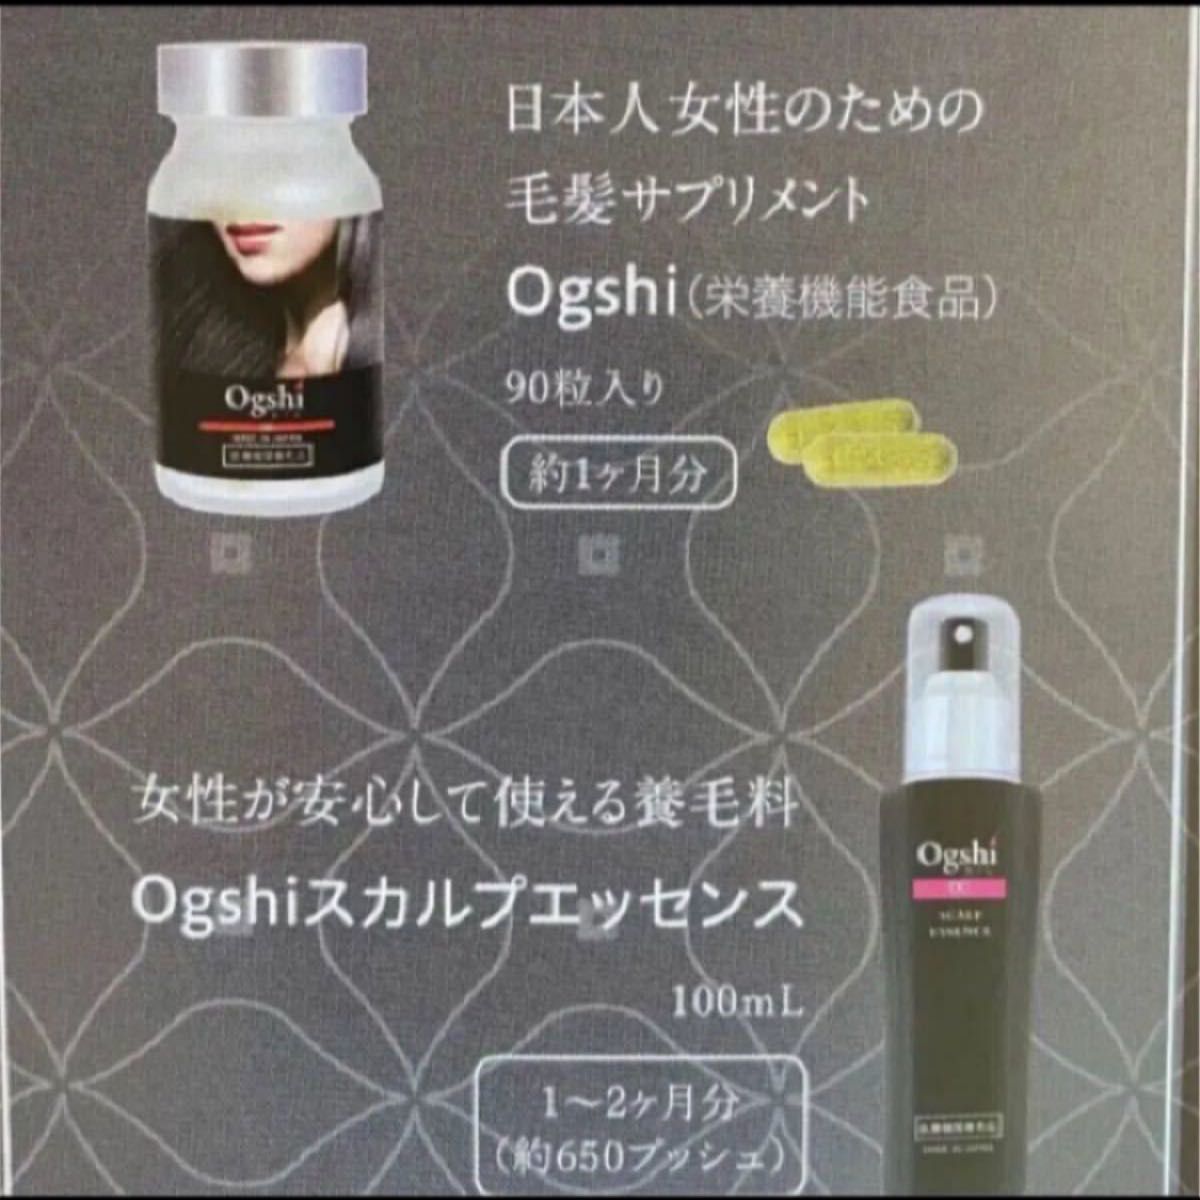 新品 未使用 ogshi おぐし サプリ 3個セット 未使用新品 www.urbanbug.net